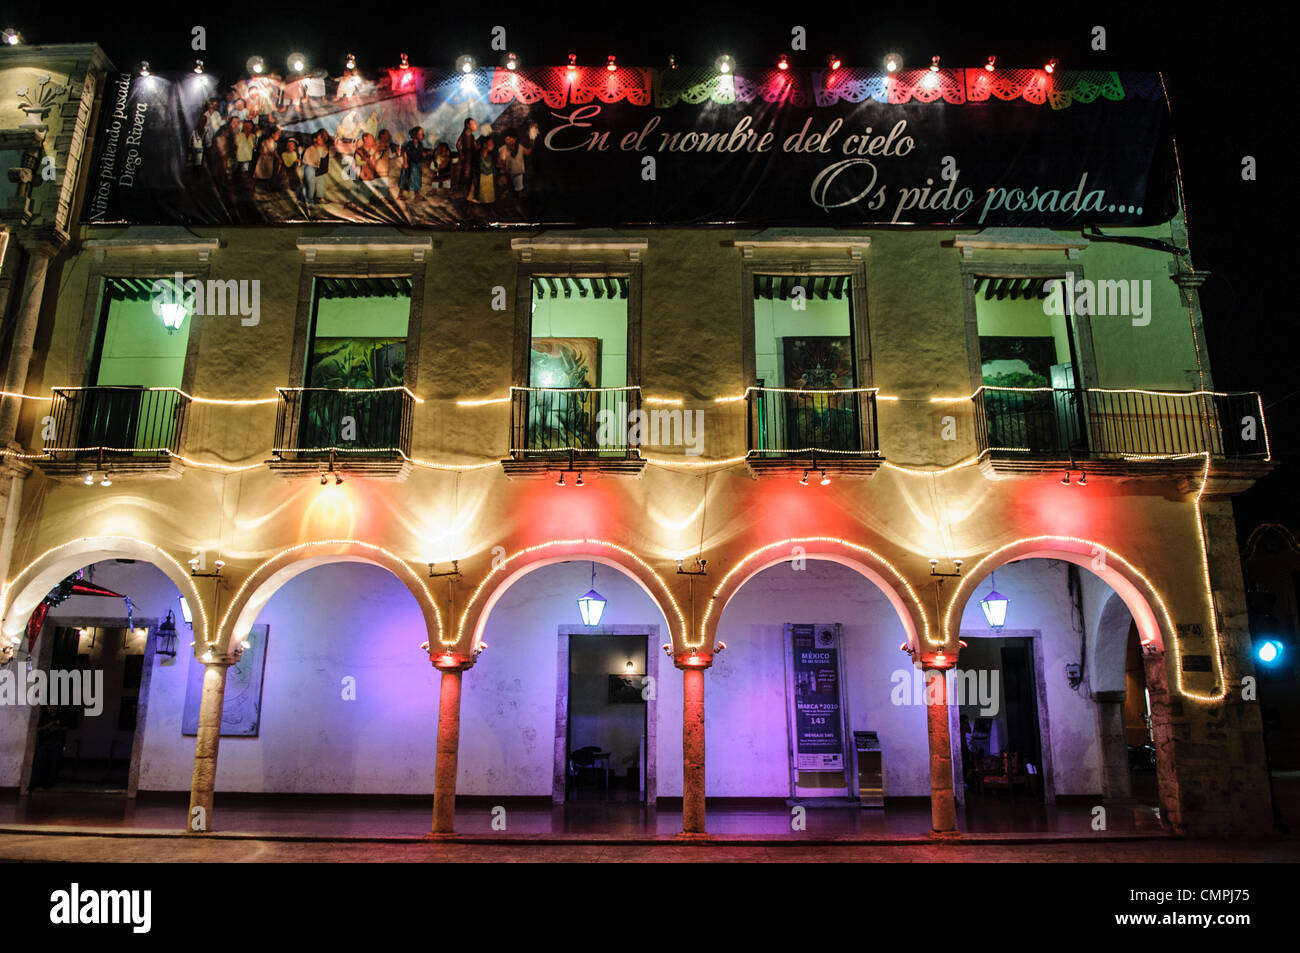 VALLADOLID, Mexique - les lumières de couleurs vives à l'extérieur de l'hôtel de ville de Valladolid, à côté de la place principale. Valladolid est une ville coloniale espagnole au milieu de la péninsule du Yucatan. Banque D'Images